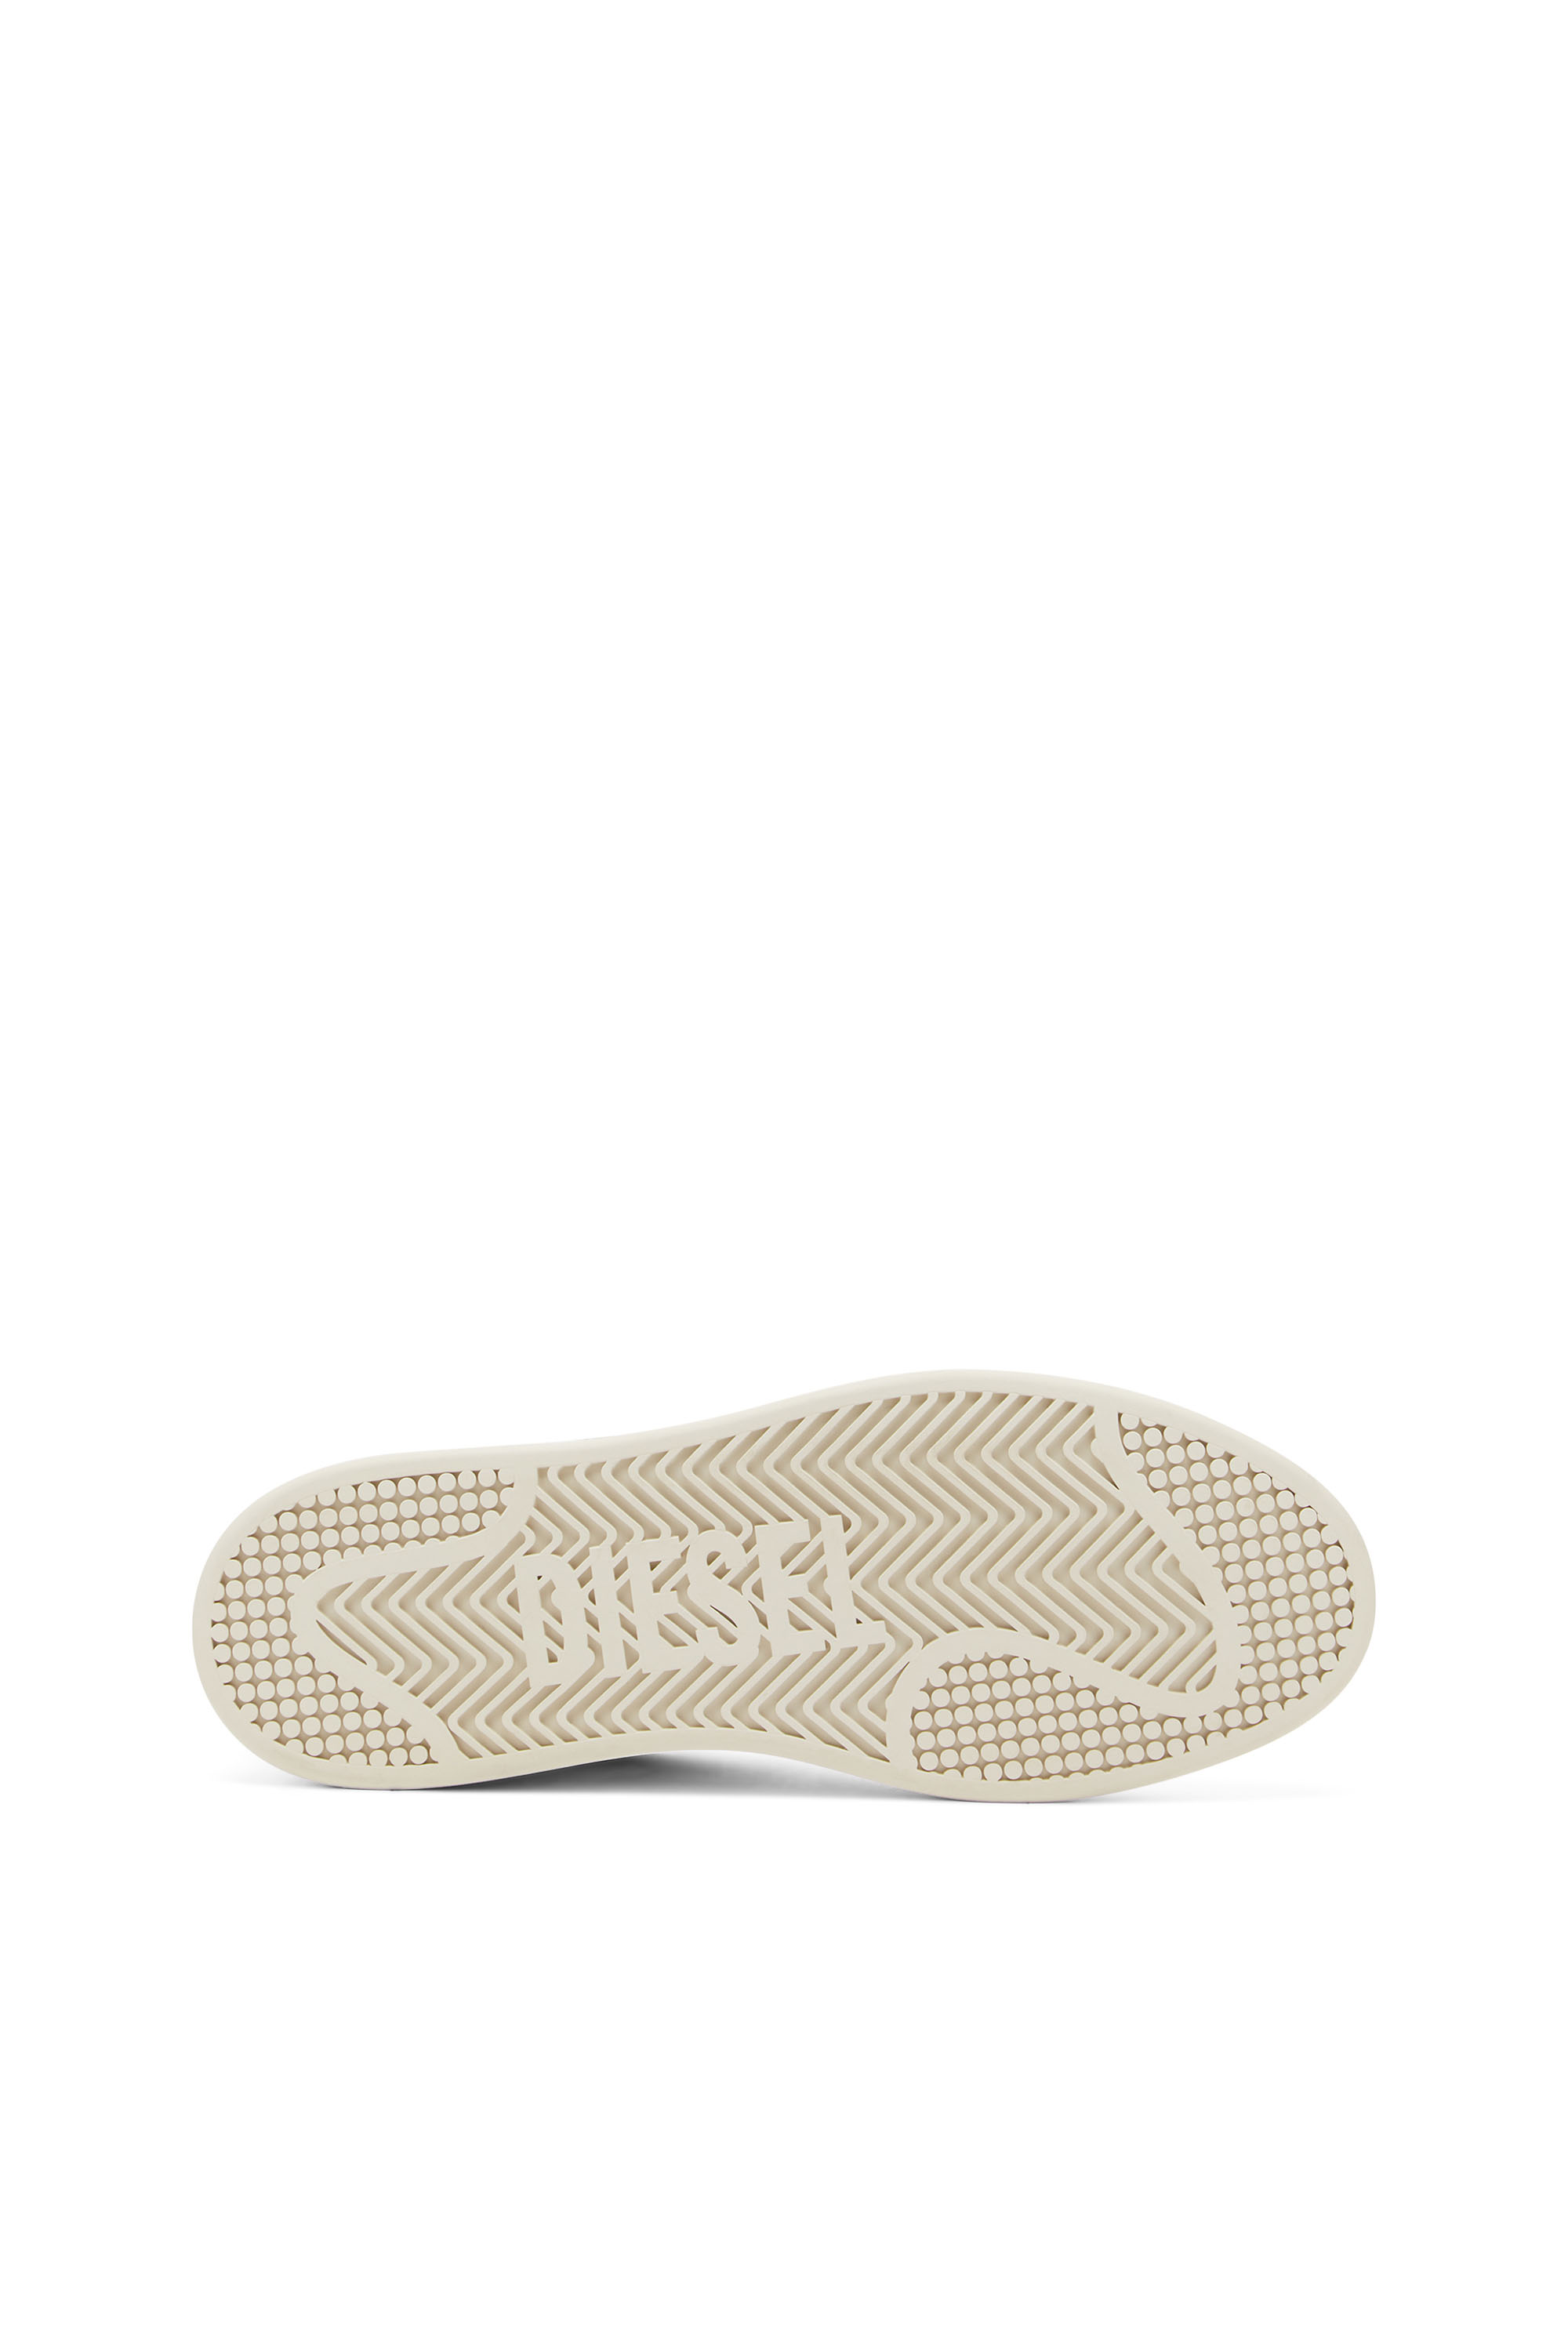 Diesel - S-ATHENE LOW, Bunt/Weiß - Image 4